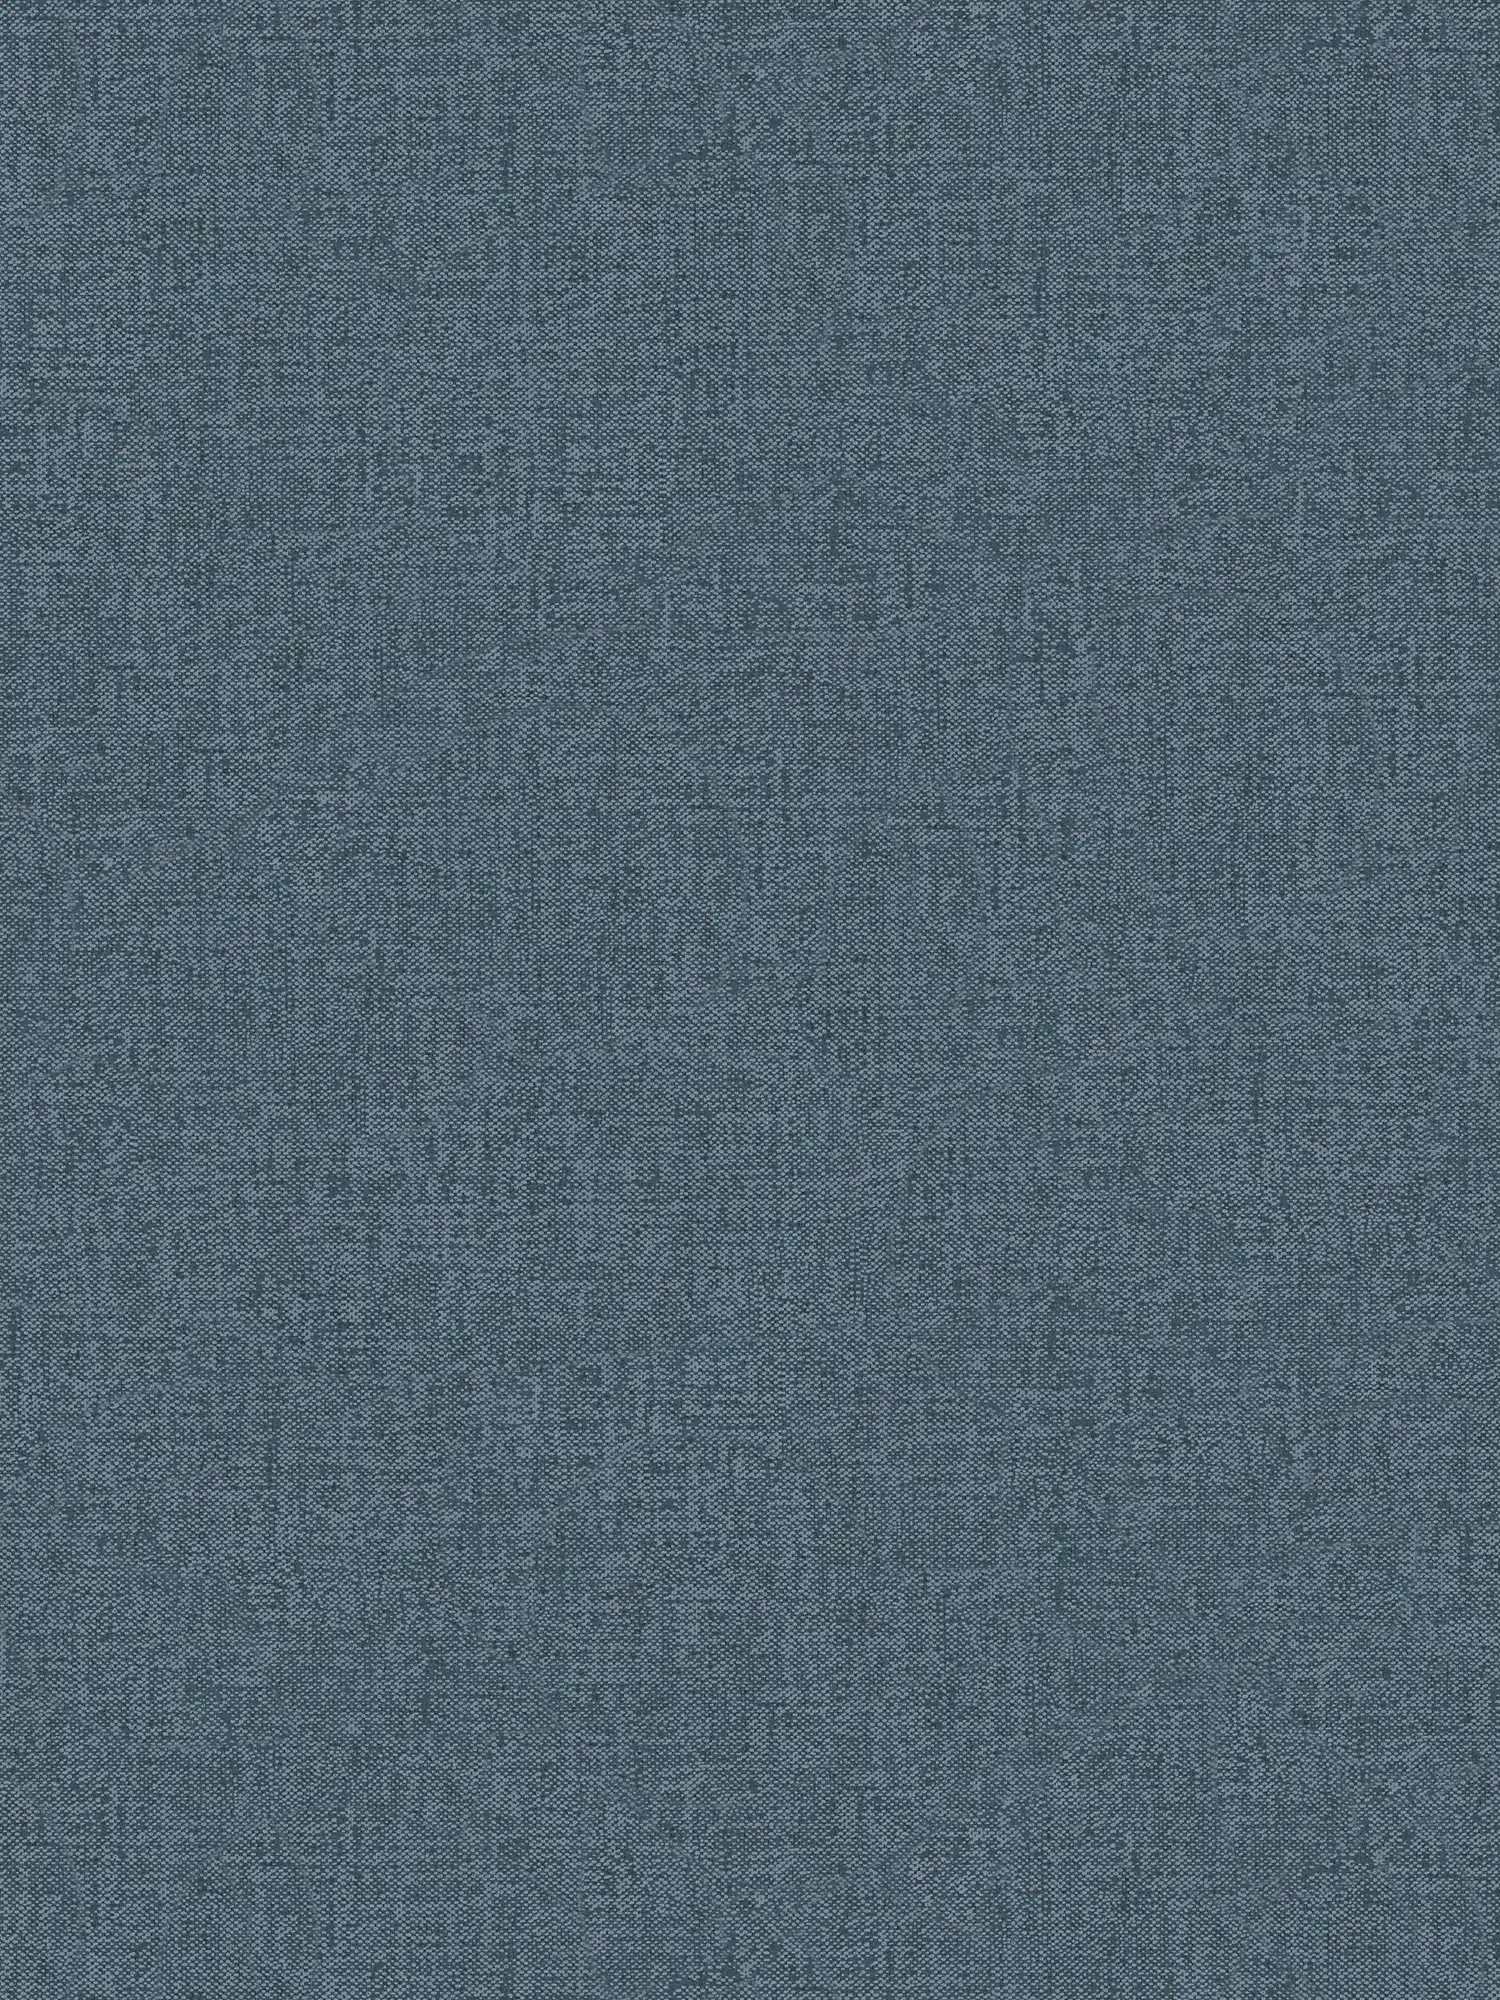         Textiloptik Tapete Jeans Blau mit Gewebestruktur – Blau
    